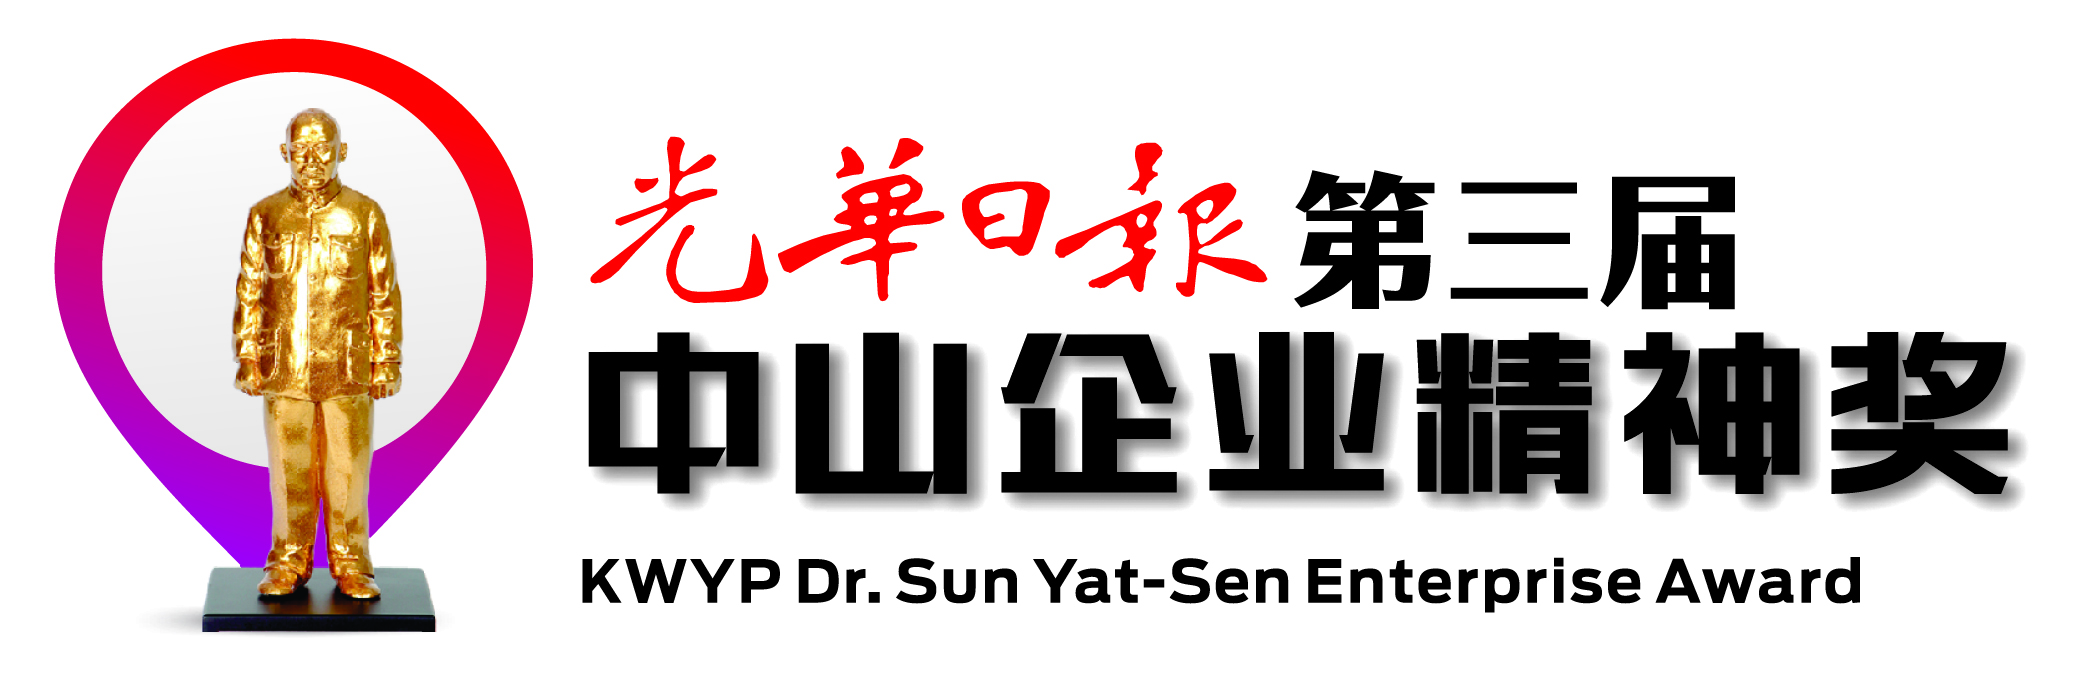 KWYP Dr. Sun Yat-Sen Enterprise Award